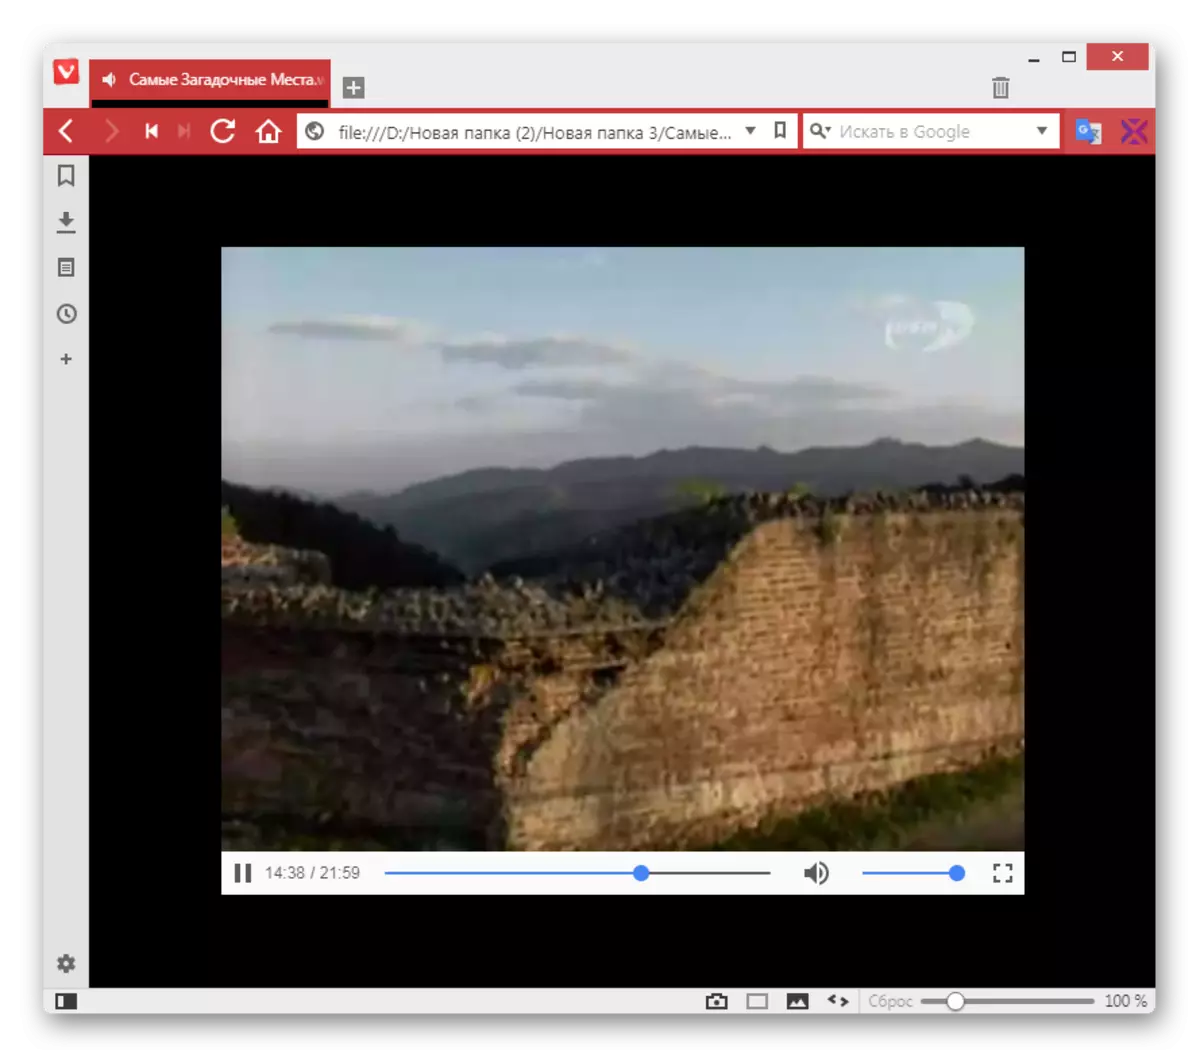 เล่นวิดีโอในรูปแบบ WebM ใน Vivaldi Browser